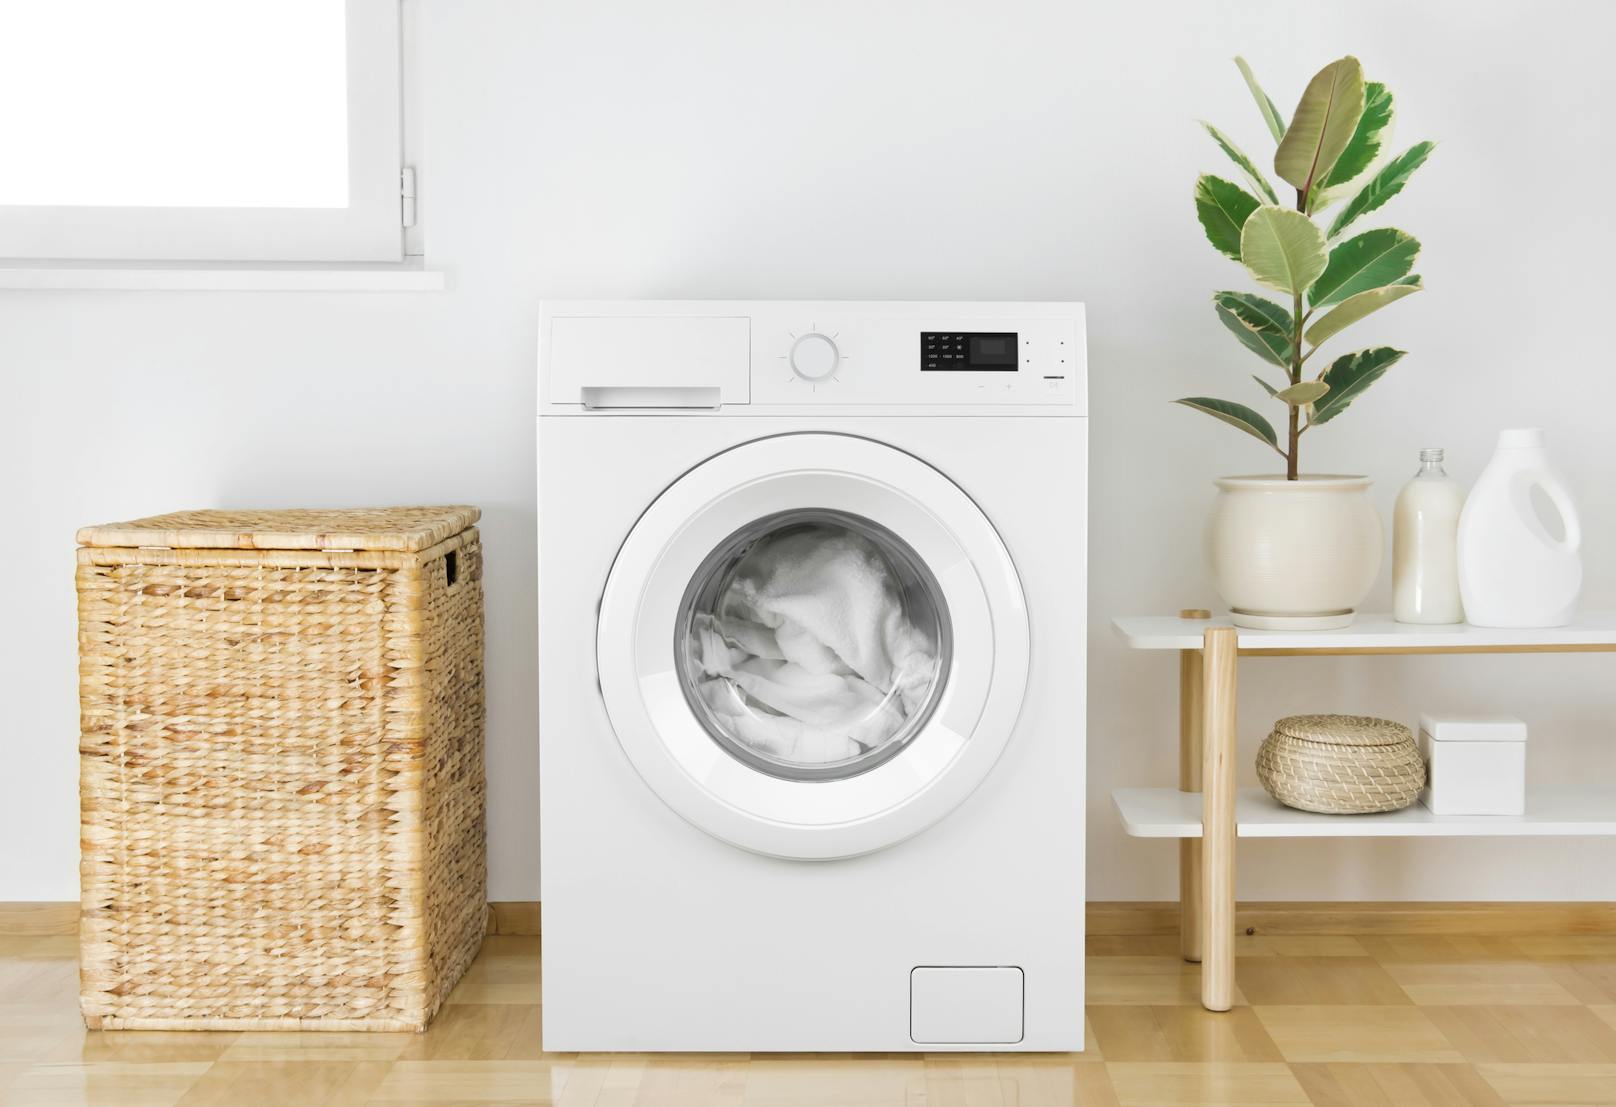 Mehr als 70 Prozent der Österreicher waschen zwei- bis dreimal pro Woche die Wäsche. 12 Prozent sind ganz besonders gründlich und nutzen ihre Waschmaschine sogar täglich.